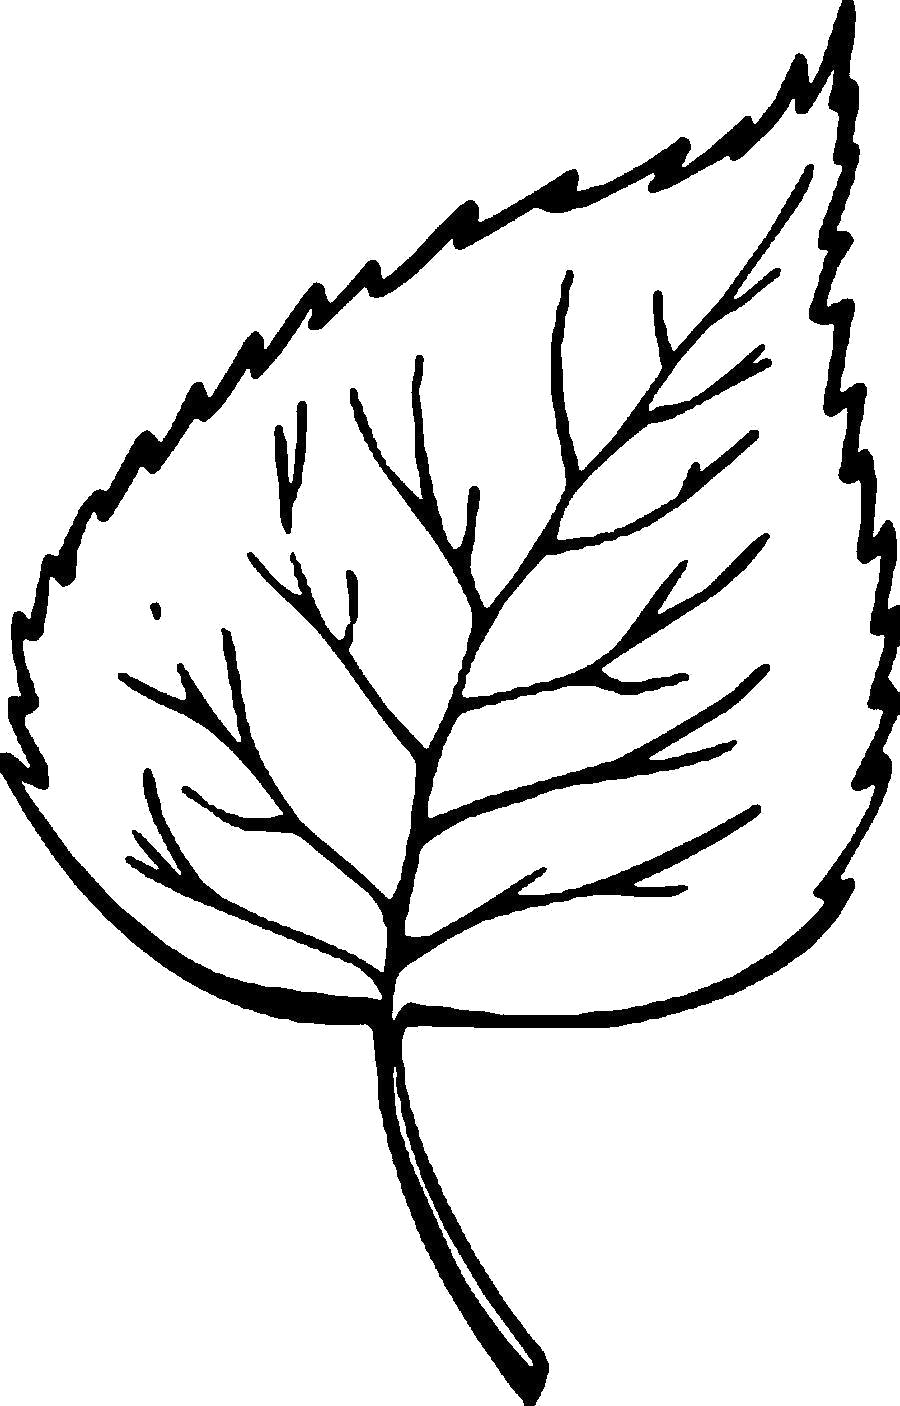 Раскраска Раскраски Листья деревьев шаблон листа березы. Контуры листьев